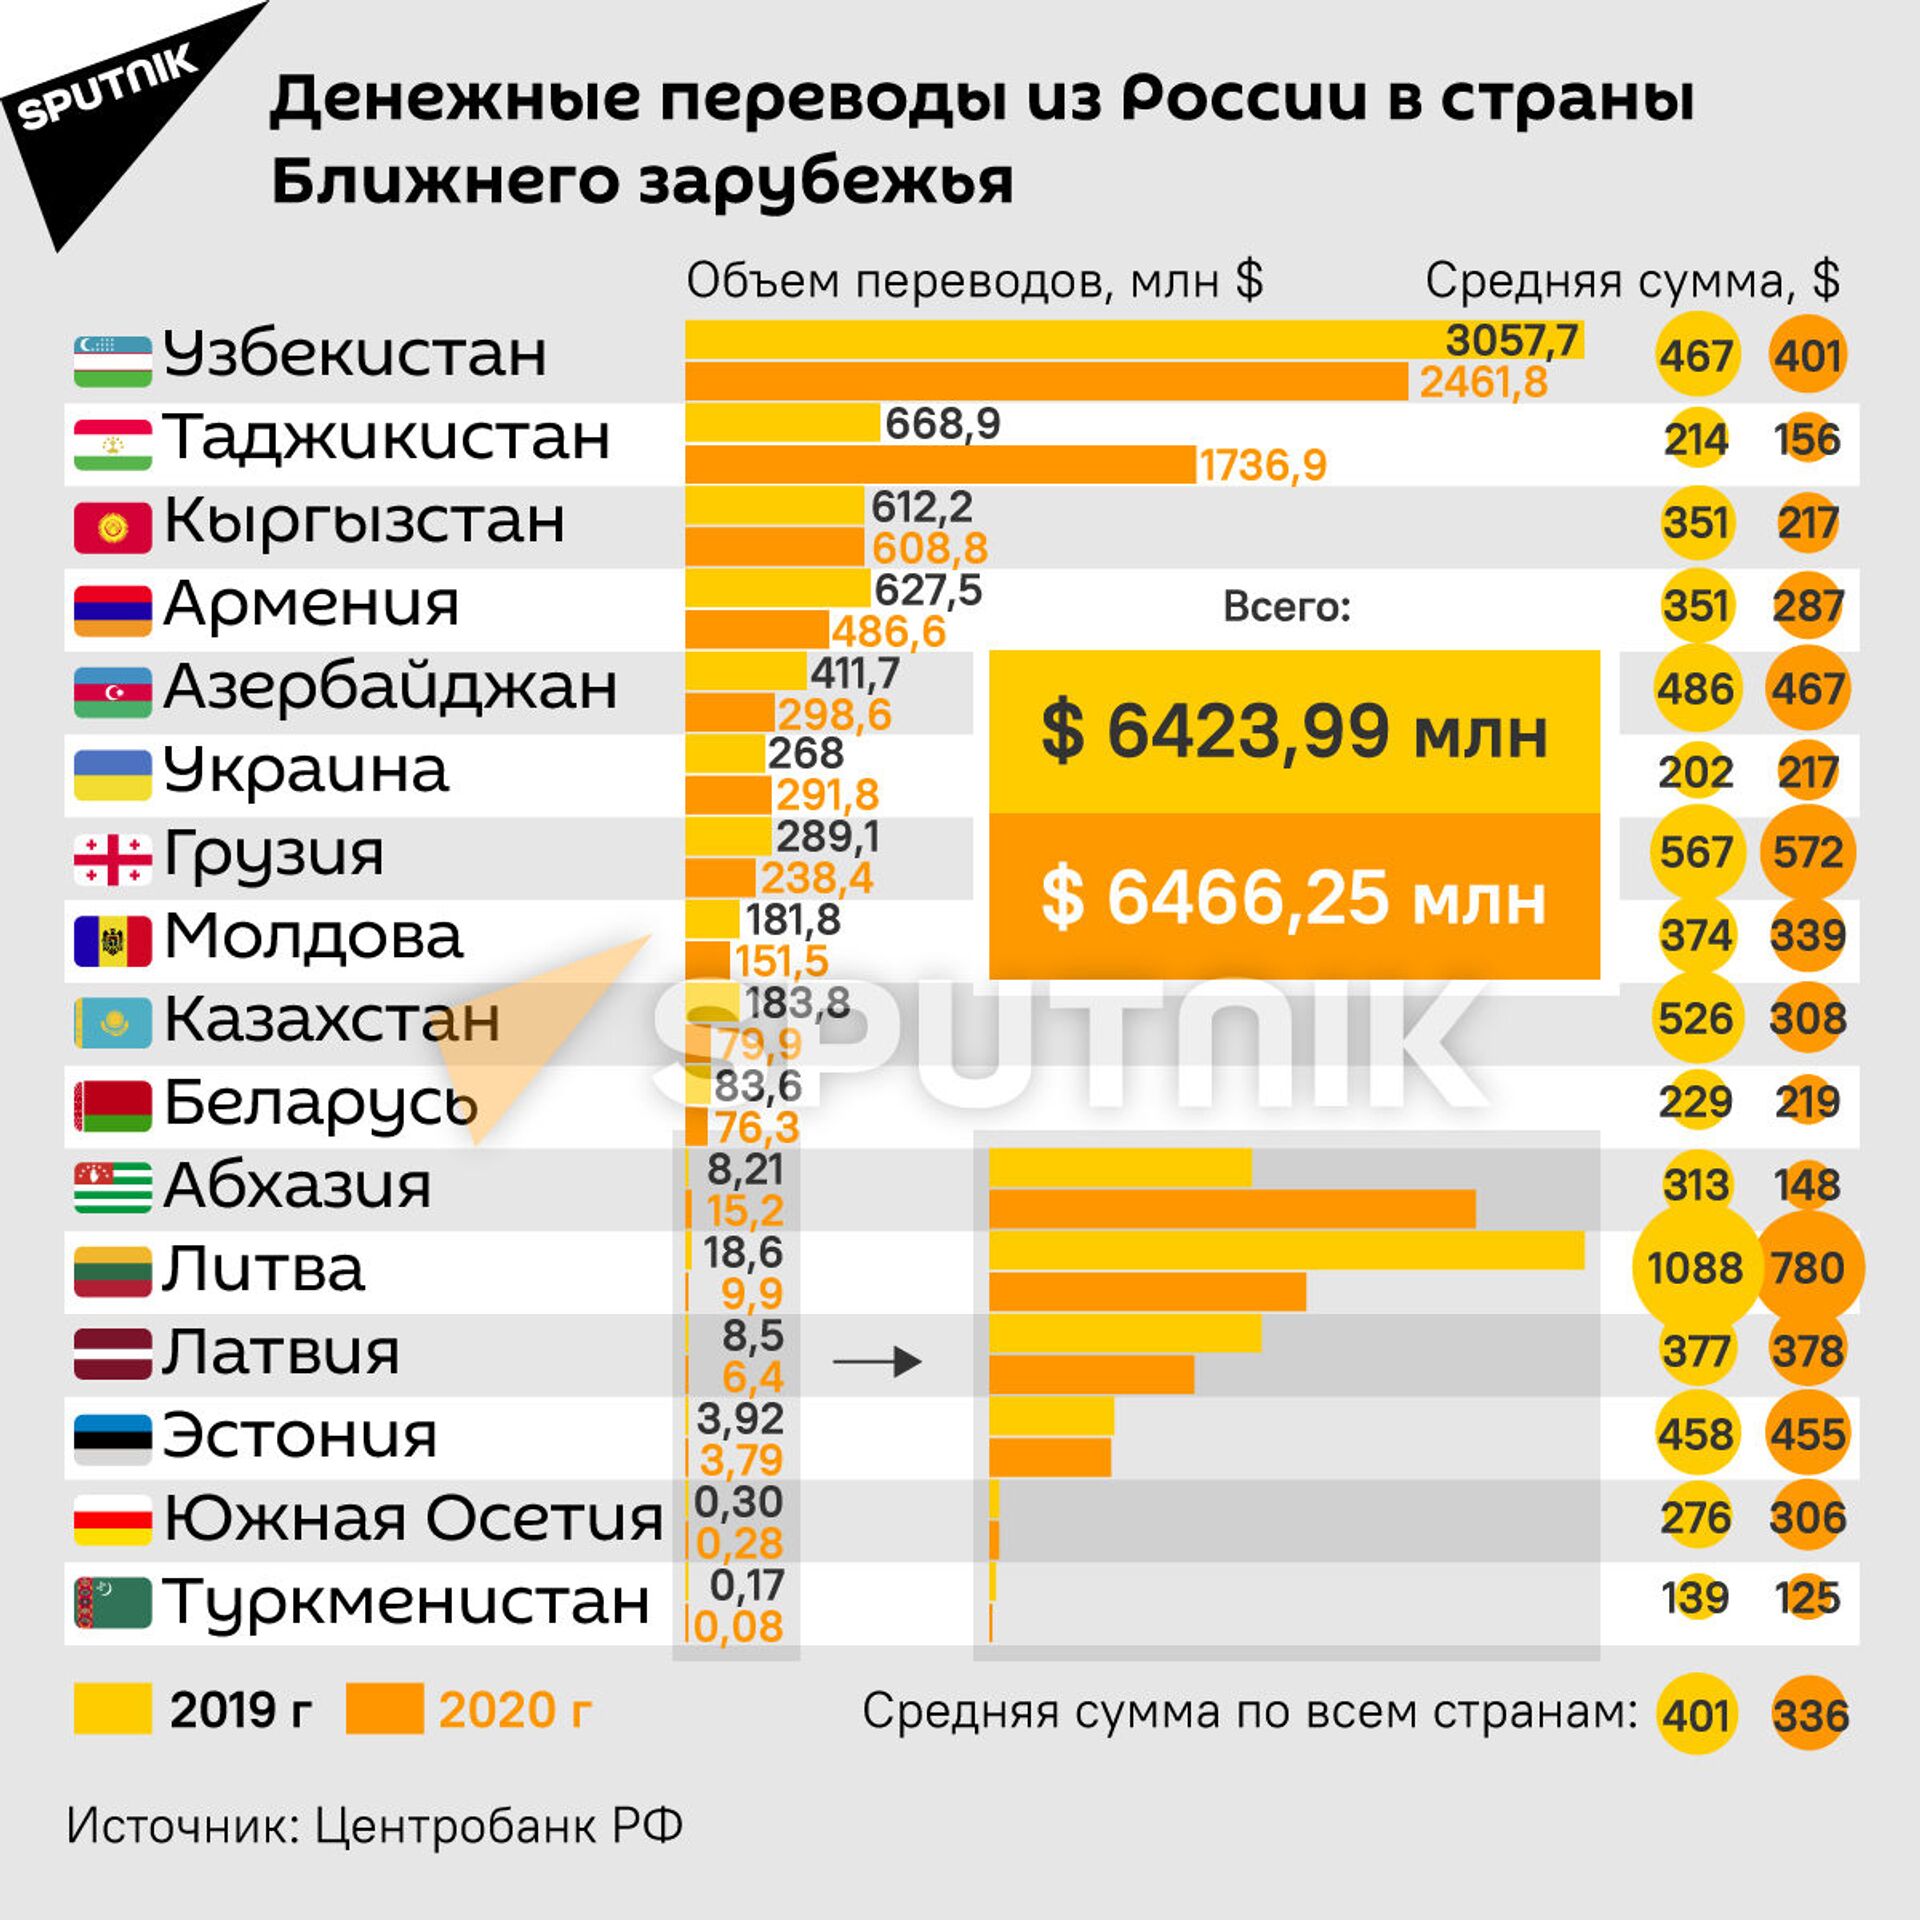 Денежные переводы из РФ – самые выгодные в мире. Как мигранты спасают экономики стран СНГ - Sputnik Южная Осетия, 1920, 17.05.2021